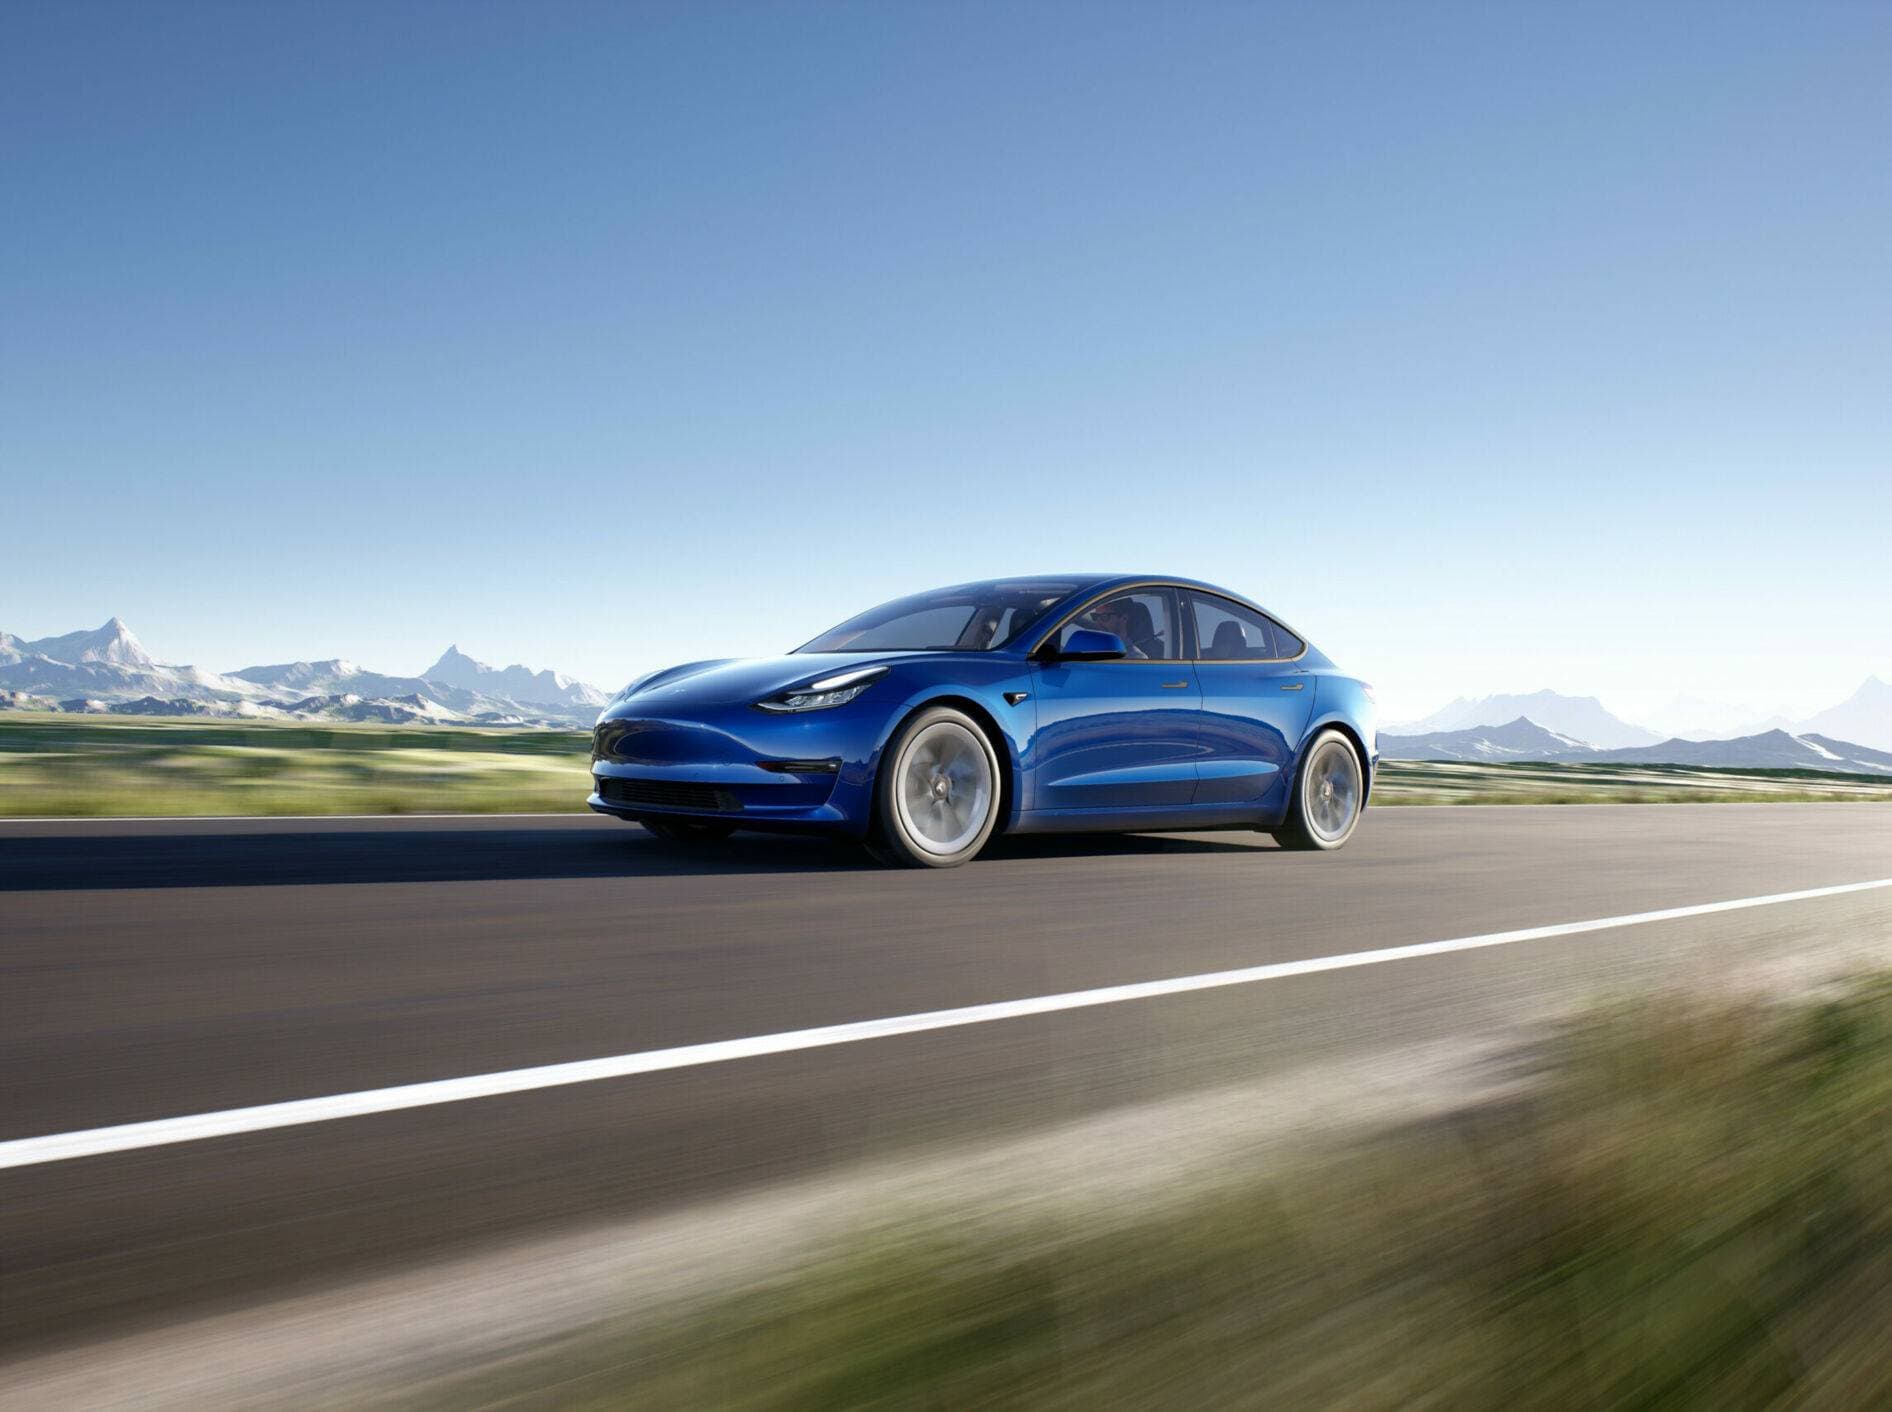 Neues Tesla-SUV auf dem Markt: Diese neuen Funktionen gibt es - EFAHRER.com